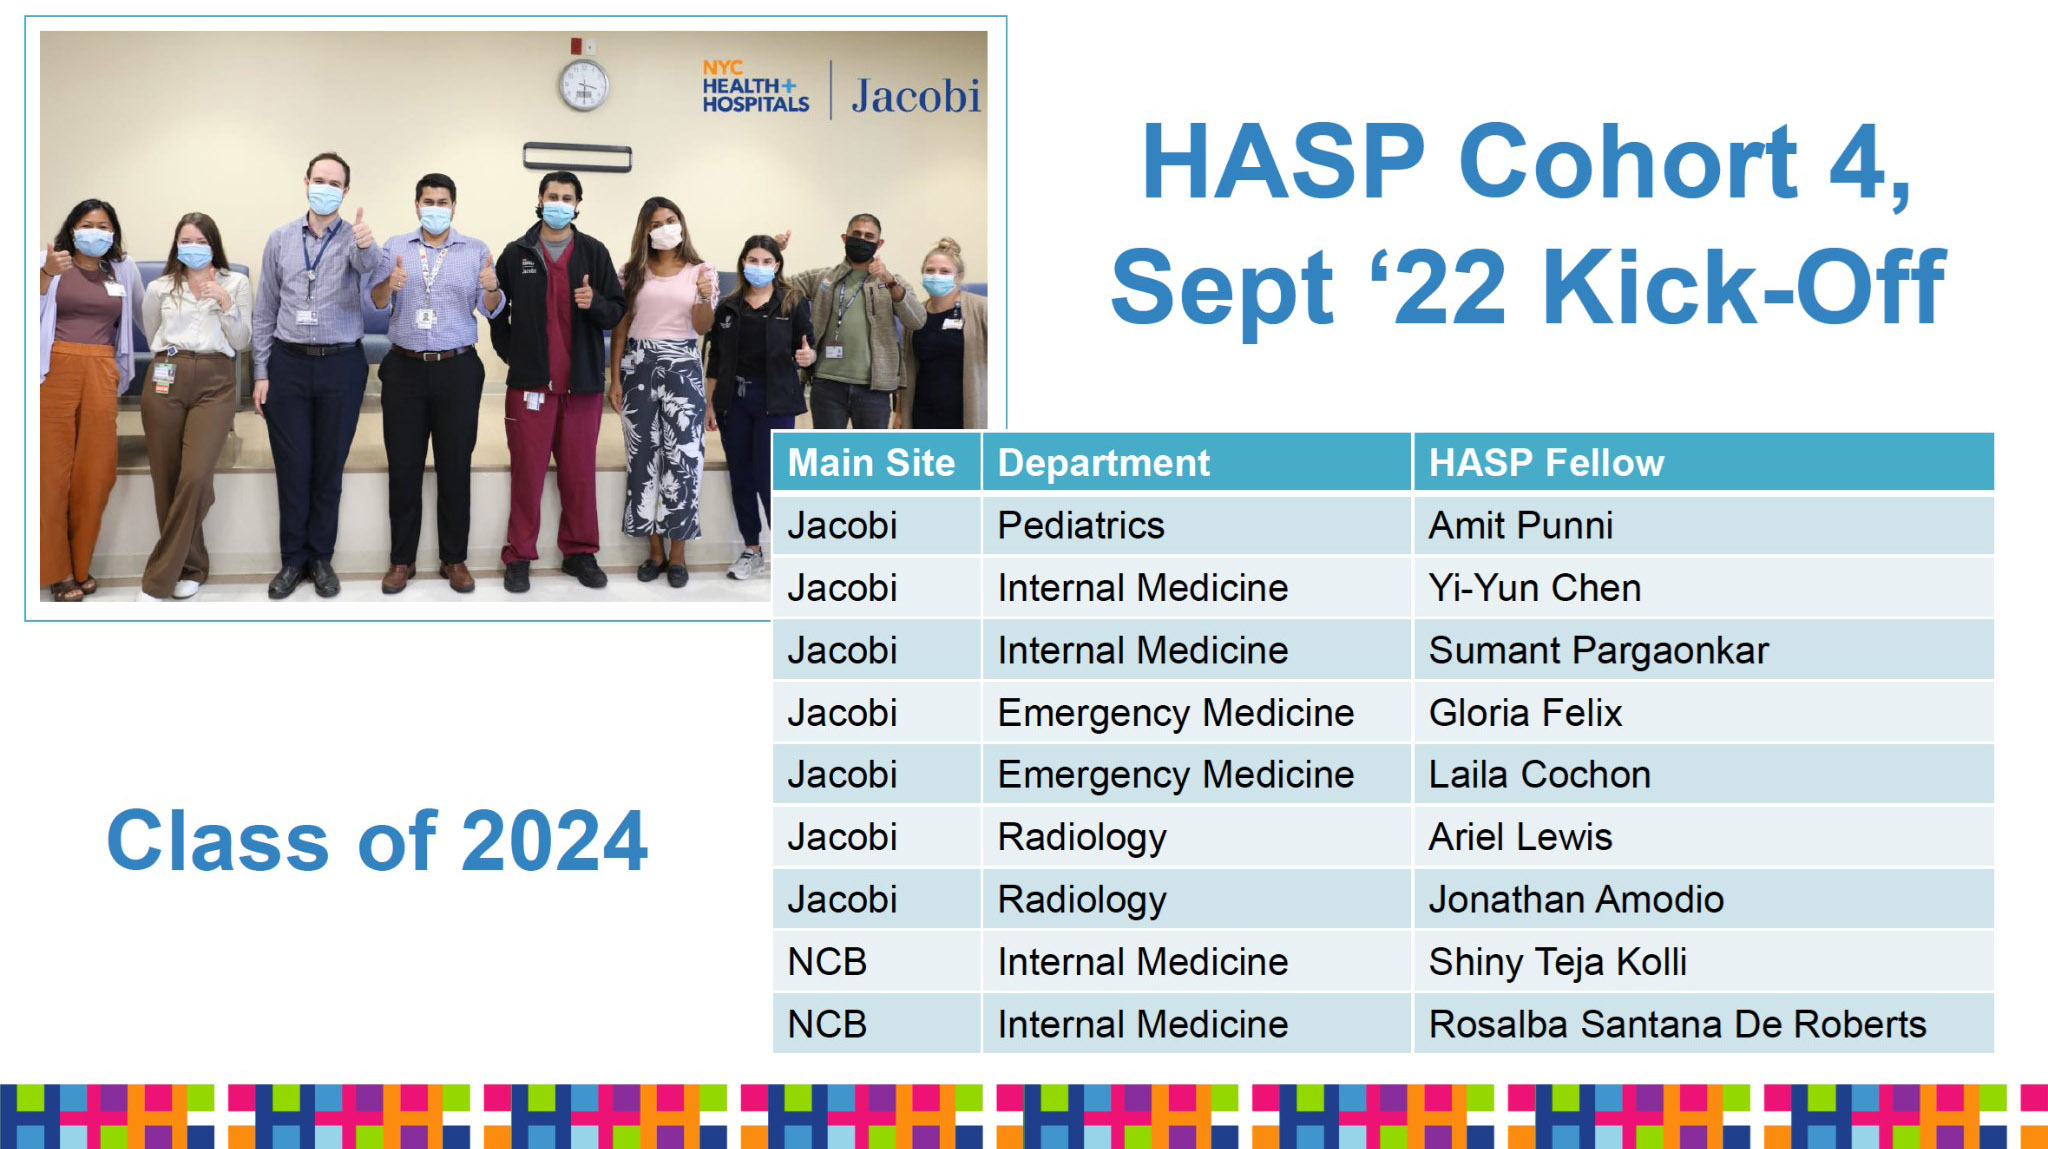 HASP Cohort 4 Sept 22 Kick-Off